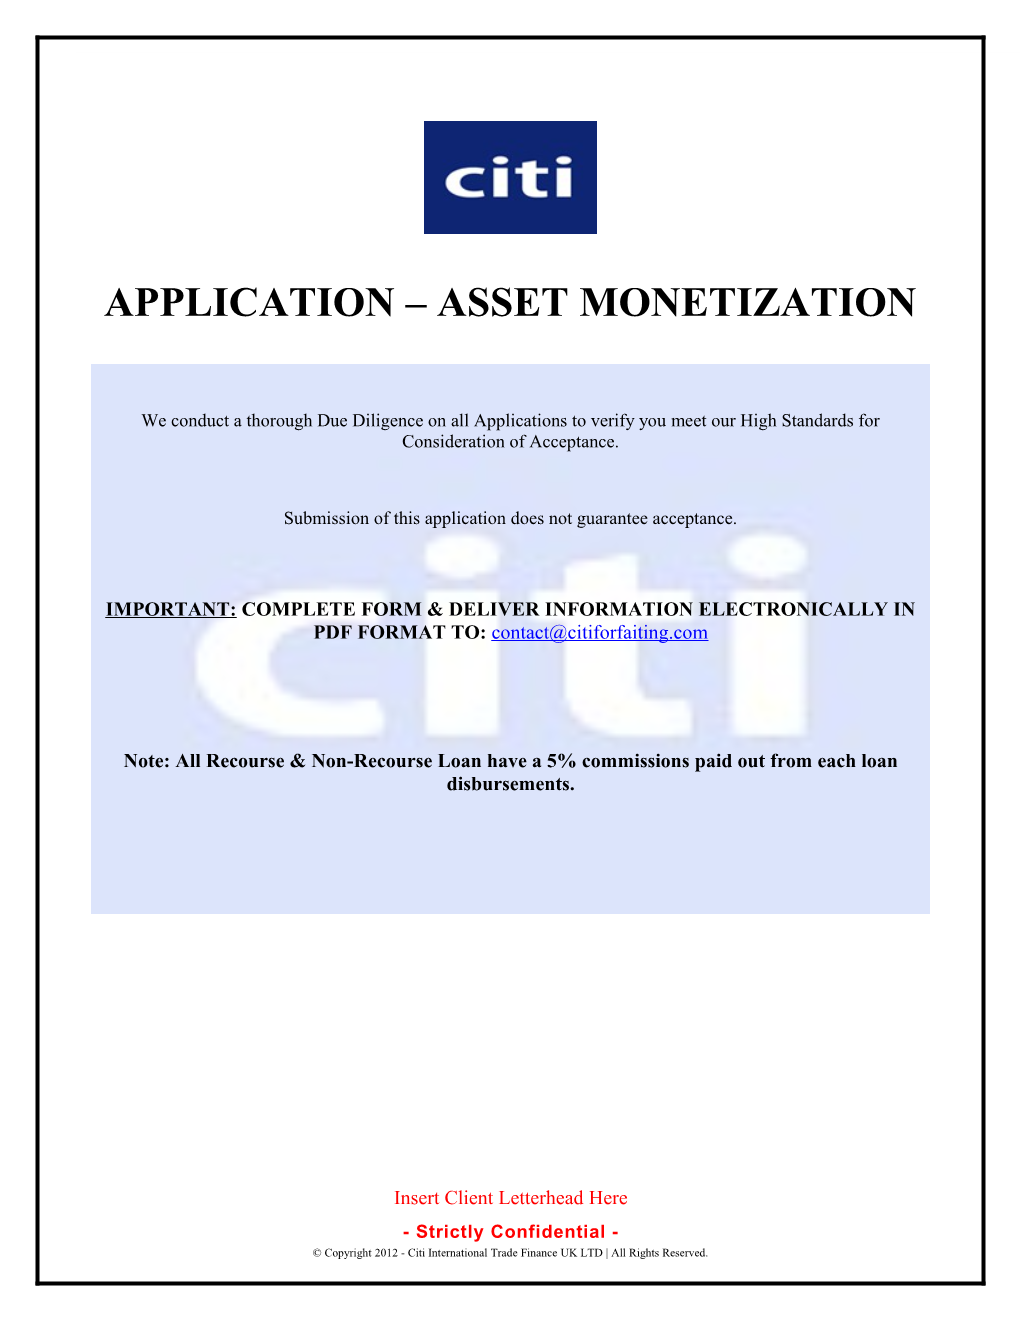 Application Asset Monetization